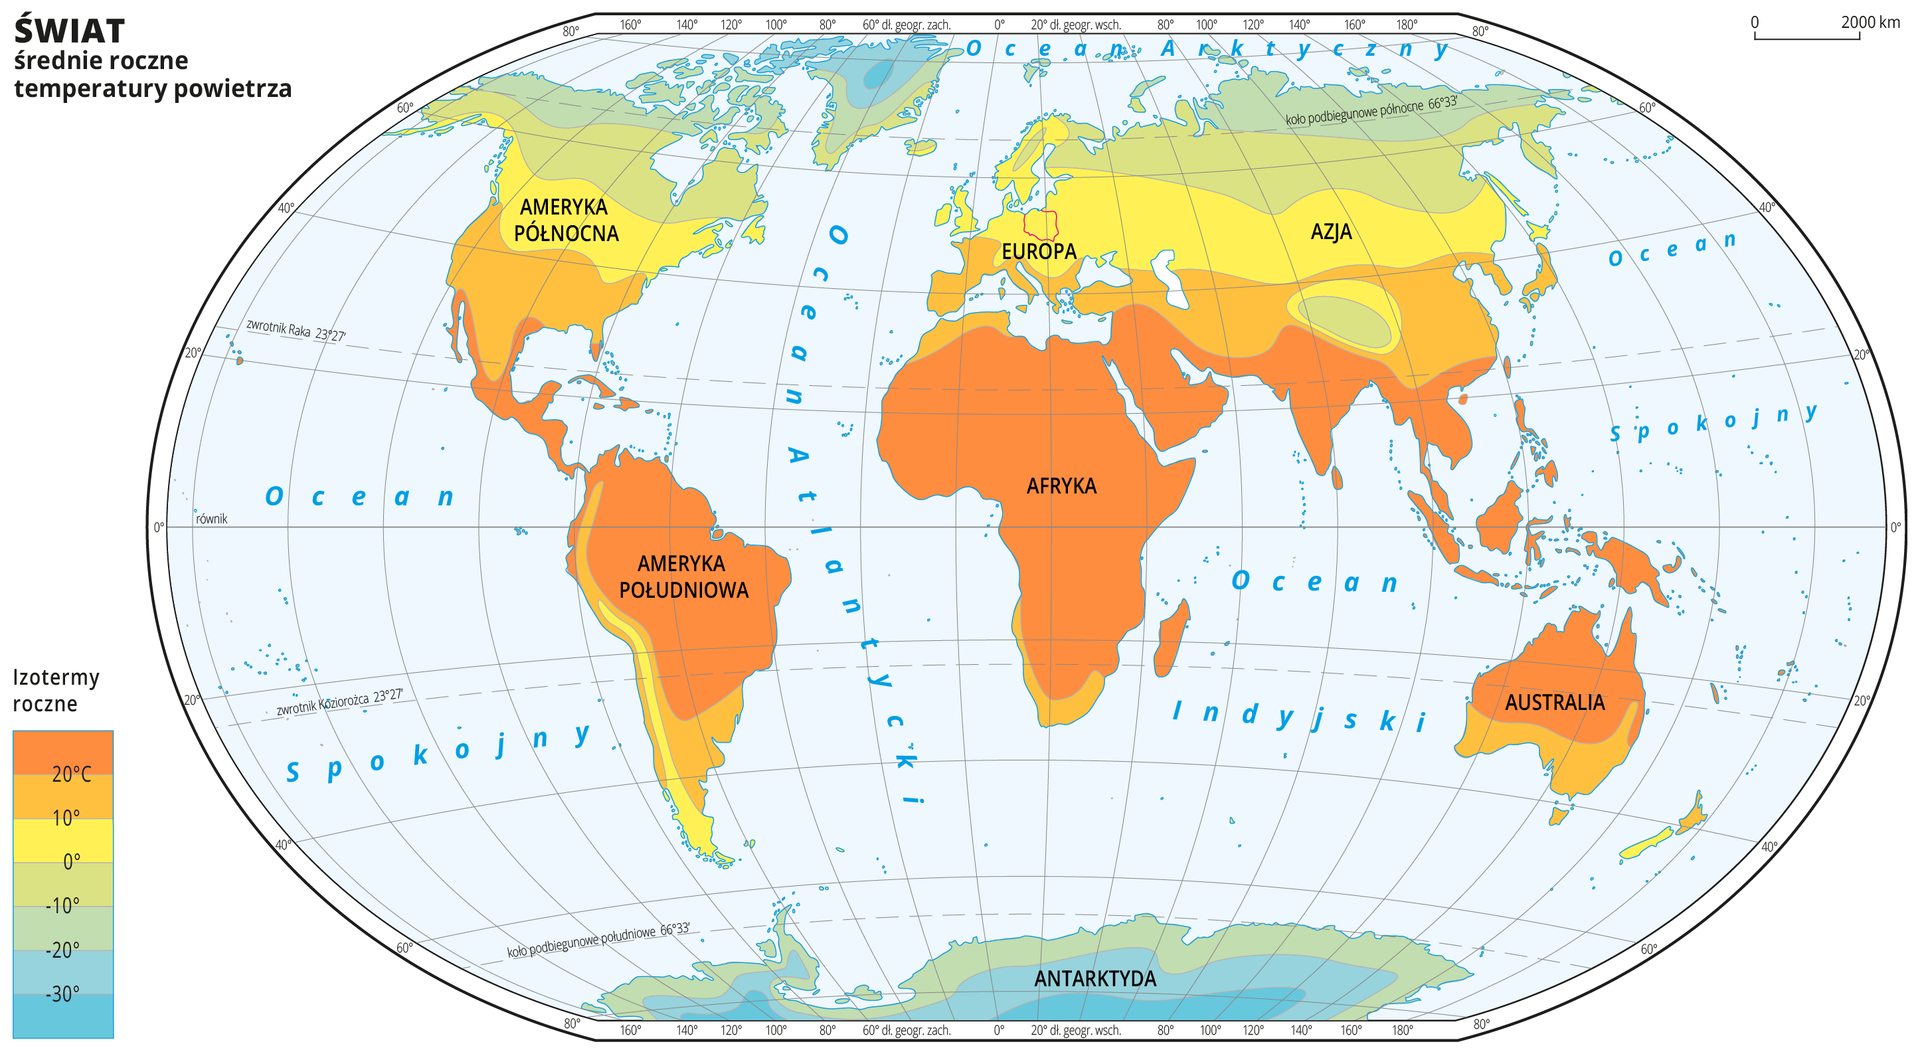 Ilustracja przedstawia mapę świata. Opisano kontynenty. Morza zaznaczono kolorem niebieskim. Opisano oceany. Czerwoną linią zaznaczono kontur Polski. Na mapie w obrębie lądów kolorami zaznaczono średnie roczne temperatury powietrza. Centralną część mapy pokrywa kolor pomarańczowy. Na północy kolor przechodzi w żółty i zielony do niebieskiego. Na południu kolor przechodzi w zielony do niebieskiego. Mapa pokryta jest równoleżnikami i południkami. Dookoła mapy w białej ramce opisano współrzędne geograficzne co dwadzieścia stopni. Po lewej stronie mapy w legendzie umieszczono prostokątny pionowy pasek. Pasek podzielono na siedem części. U góry – ciemnopomarańczowy, dalej pomarańczowy, środek żółty przechodzący w zielony i ciemnozielony, na dole niebieski do ciemnoniebieskiego. Każda część paska obrazuje dziesięciostopniowy przedział średniej rocznej temperatury powietrza. Ciemnopomarańczowy oznacza obszary najcieplejsze, ciemnoniebieski – najzimniejsze. Odcieniami koloru pomarańczowego zaznaczono obszary o średniej rocznej temperaturze powietrza powyżej dziesięciu stopni Celsjusza, kolorem żółtym – od zera do dziesięciu stopni Celsjusza. Kolorem zielonym i niebieskim zaznaczono temperatury poniżej zera. Obszary o najniższej średniej rocznej temperaturze powietrza – poniżej trzydzieści stopni Celsjusza znajdują się na Grenlandii i na Antarktydzie. Obszary oznaczone kolorem ciemnopomarańczowym, oznaczającym średnią roczną temperaturę powietrza powyżej dwudziestu stopni Celsjusza znajdują się w Afryce, Ameryce Południowej, Australii i południowej części Azji.